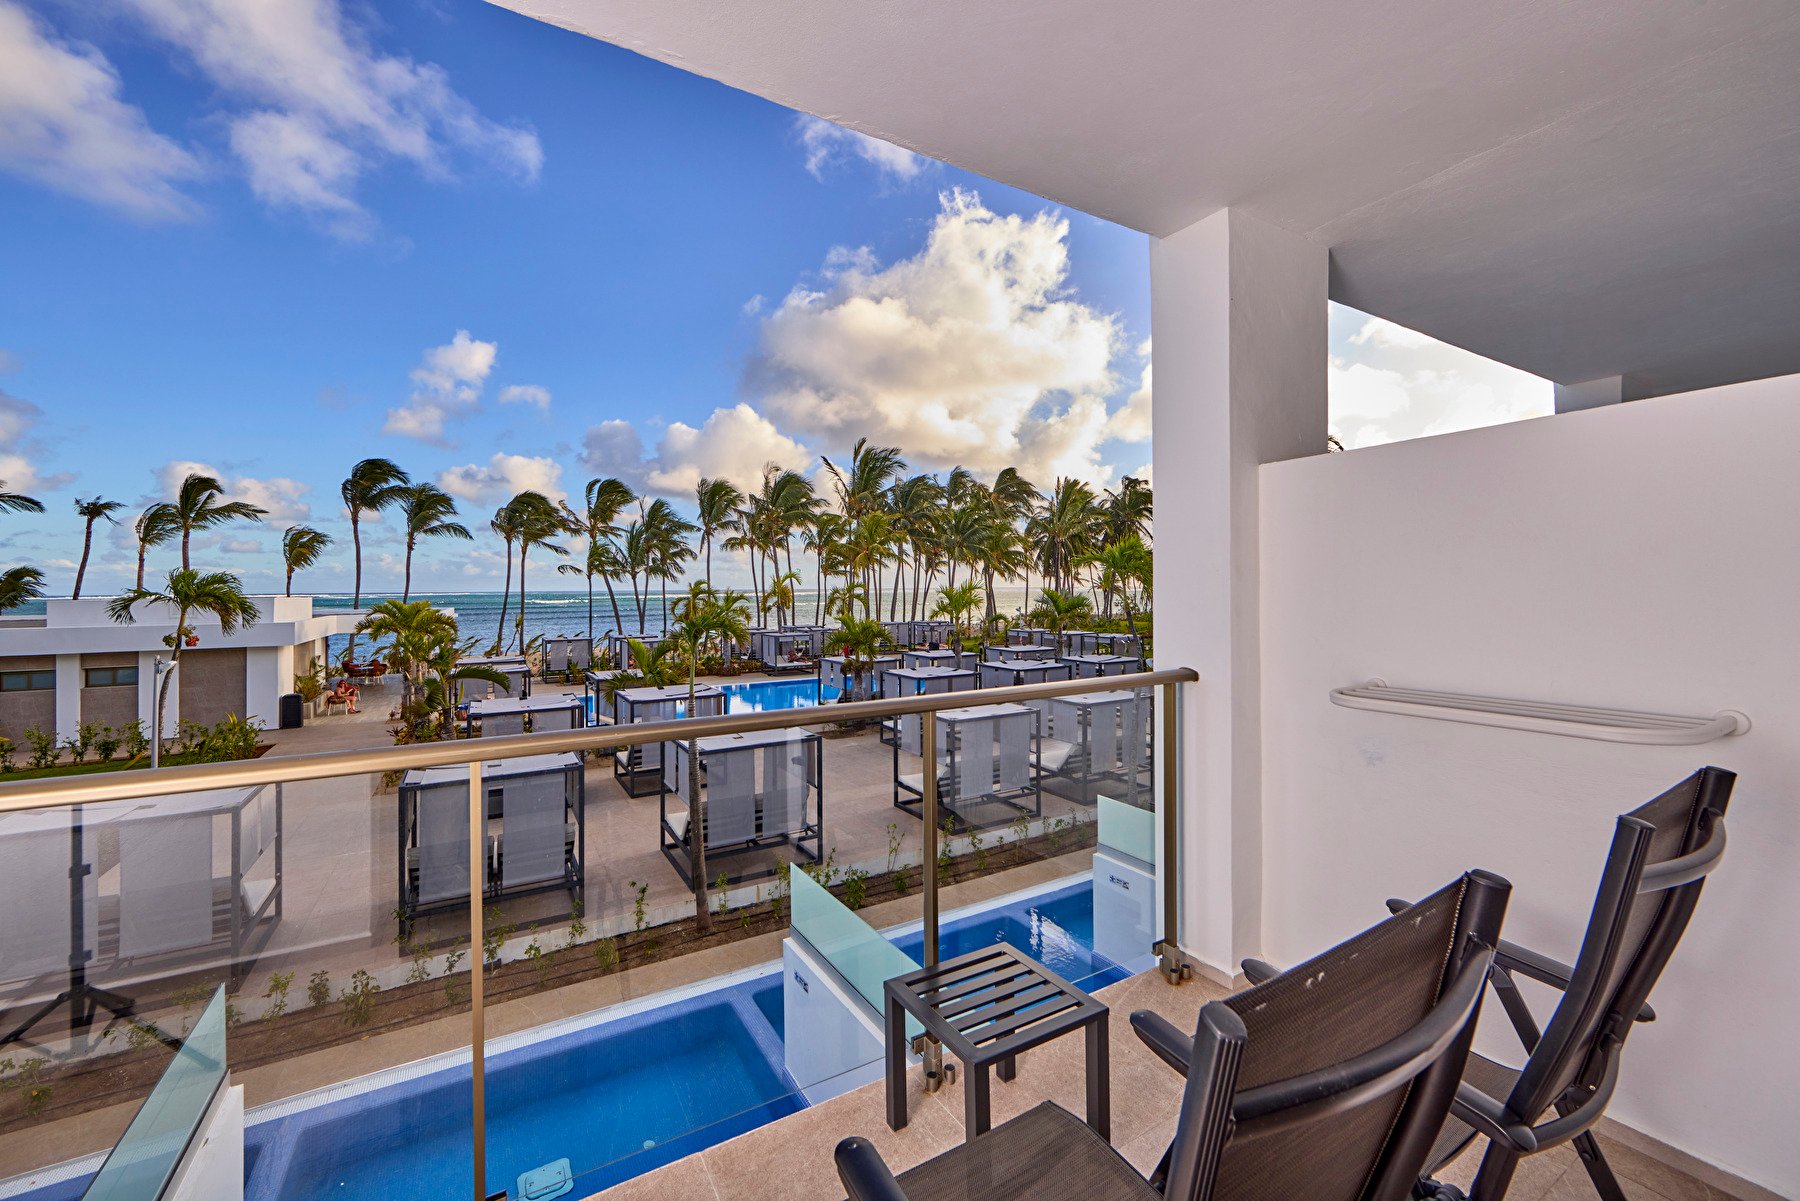 Terraza de una habitación Junior Suite swim-up de la zona Elite Club en el hotel Riu Palace Mauritius en Isla Mauricio